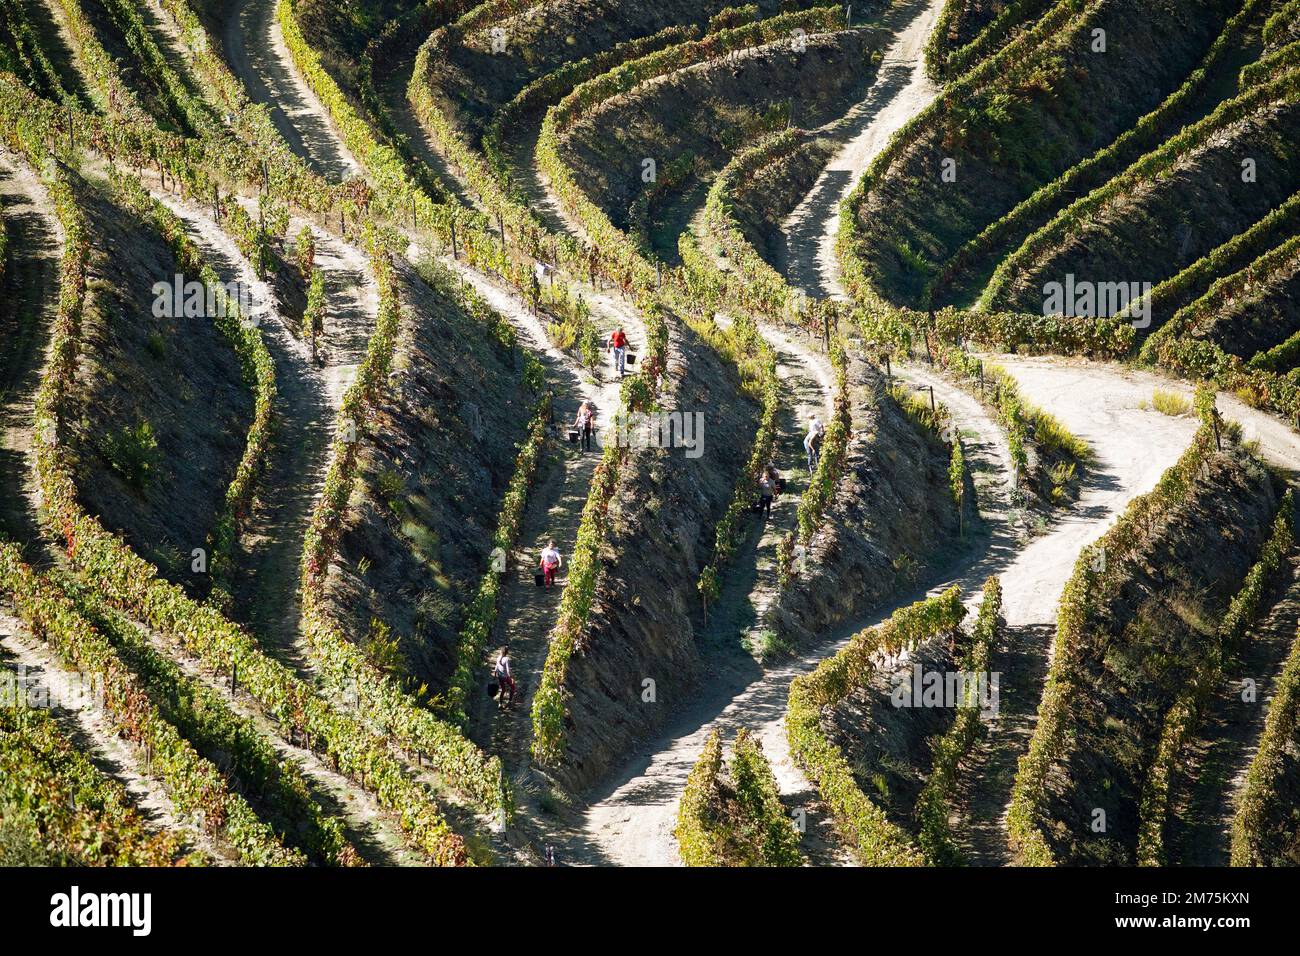 Wine terraces in the Alto Douro Valley, wine region with protected designation of origin, Norte region, Portugal Stock Photo